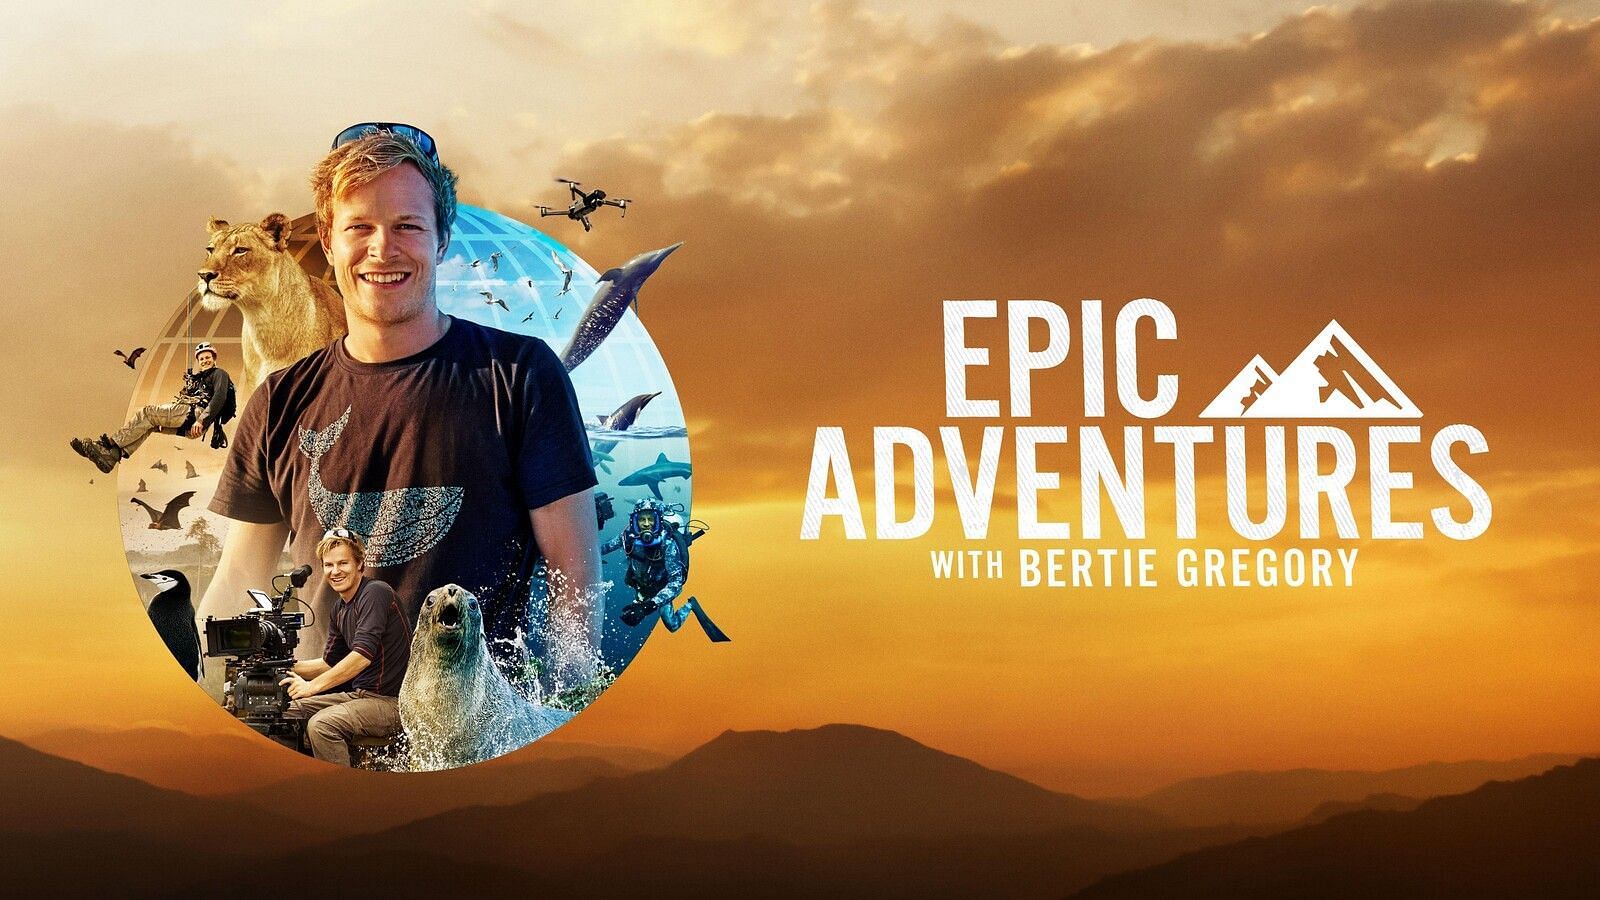 Epic Adventures with Bertie Gregory (Image via Disney+)